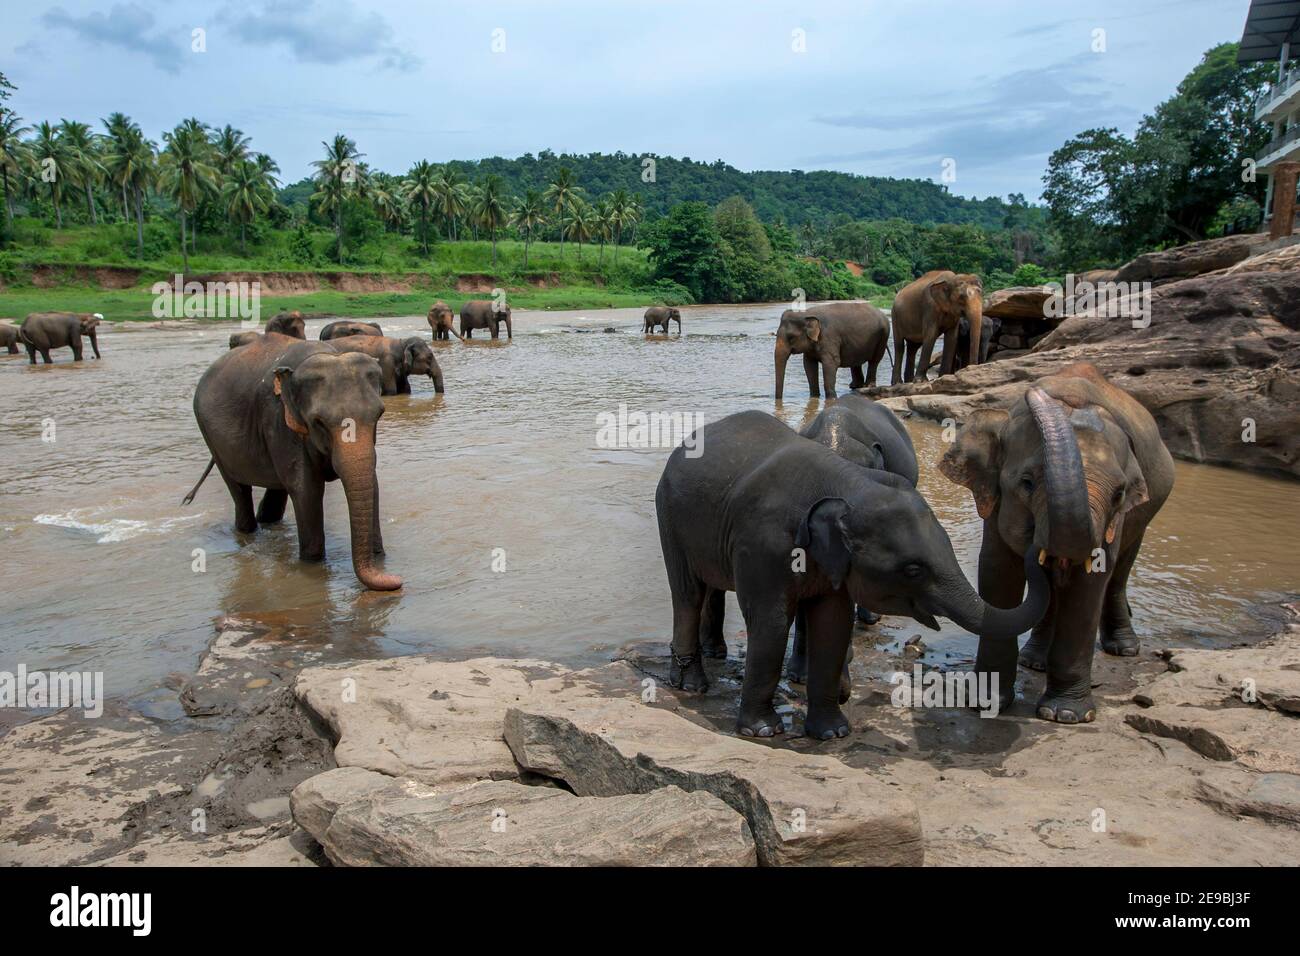 Elephants from the Pinnawala Elephant Orphanage at Pinnawala in central Sri Lanka bathe in the Maha Oya River. Stock Photo